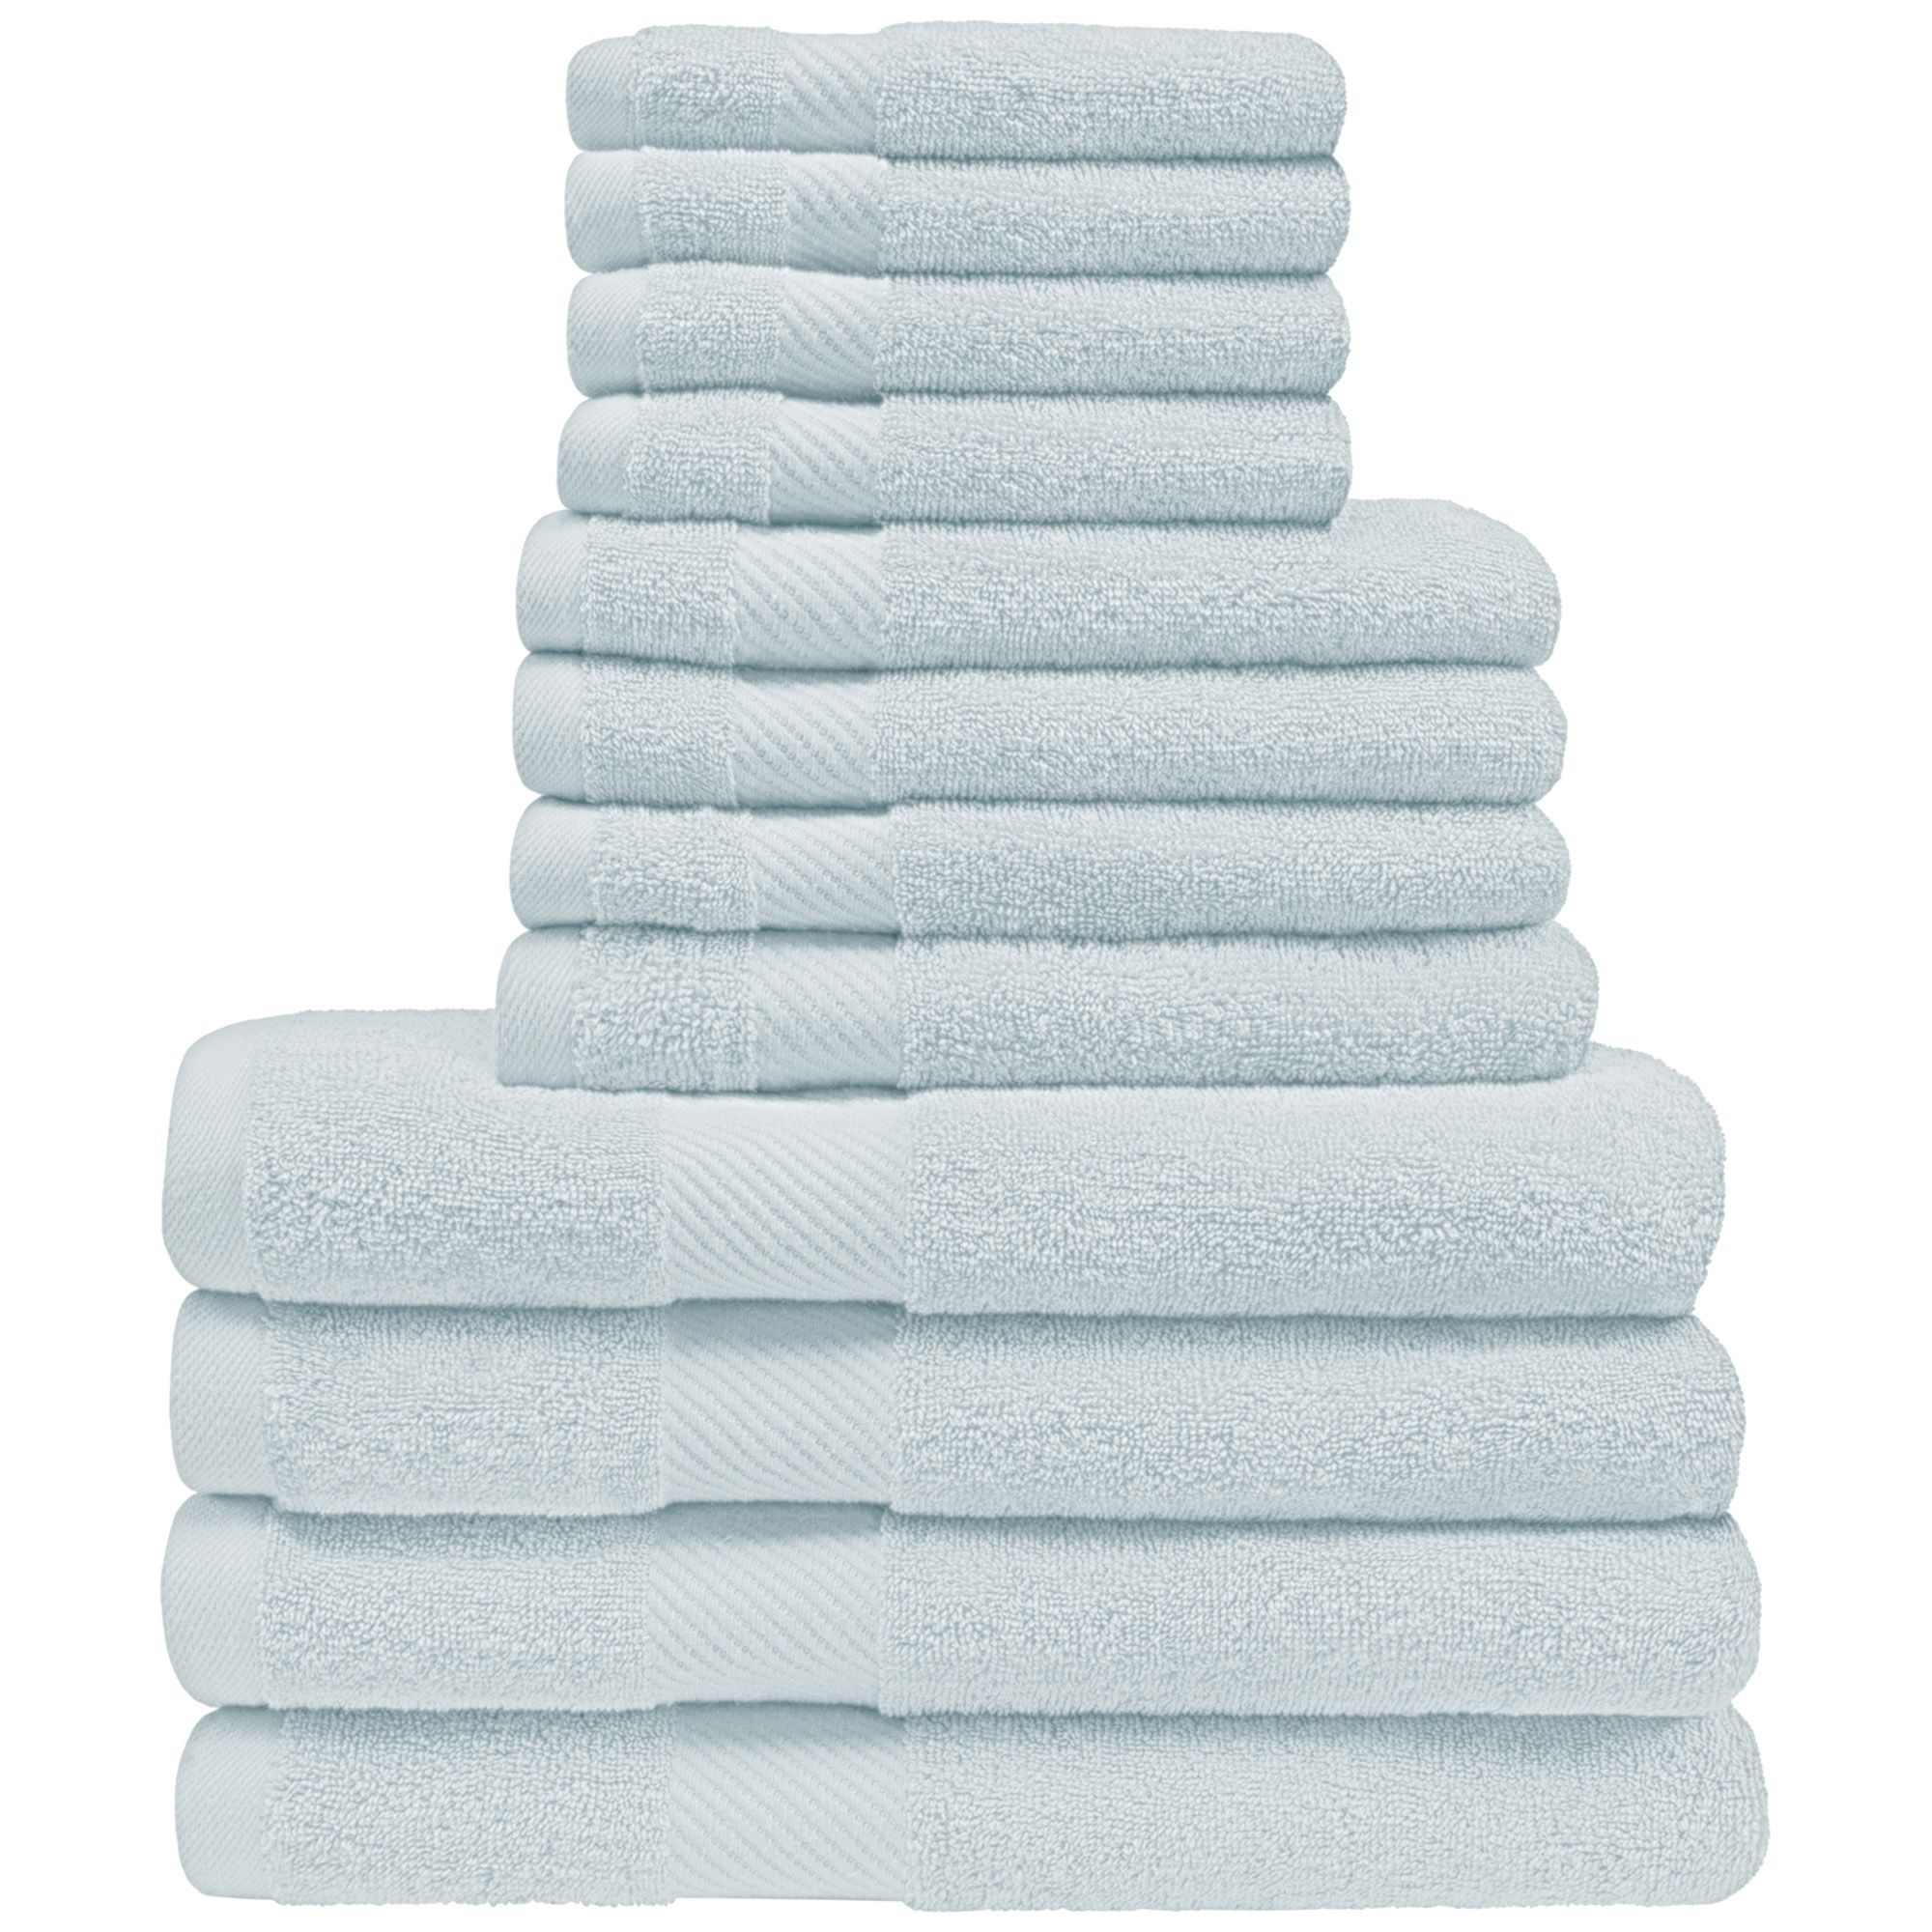 Supreme Egyptian Pure Cotton Bath Towel Set, 3 Large Bath Towels, 500 GSM  (Navy)